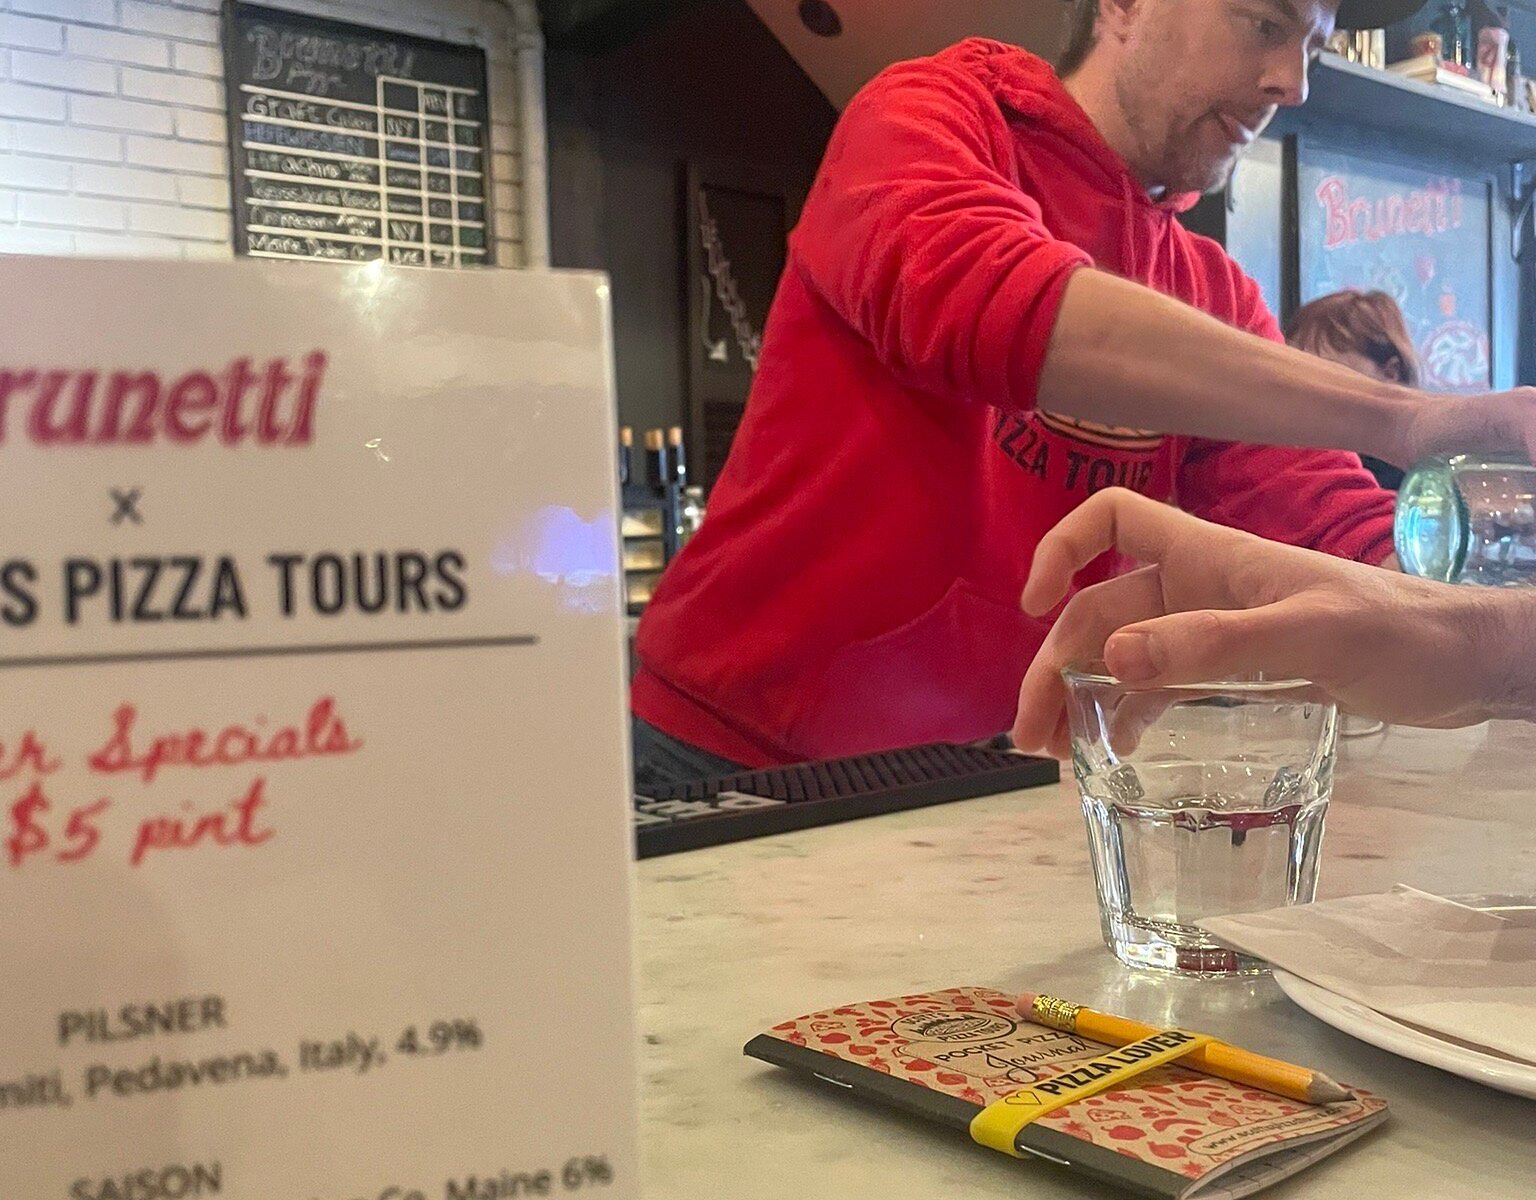 scott's pizza tour reviews